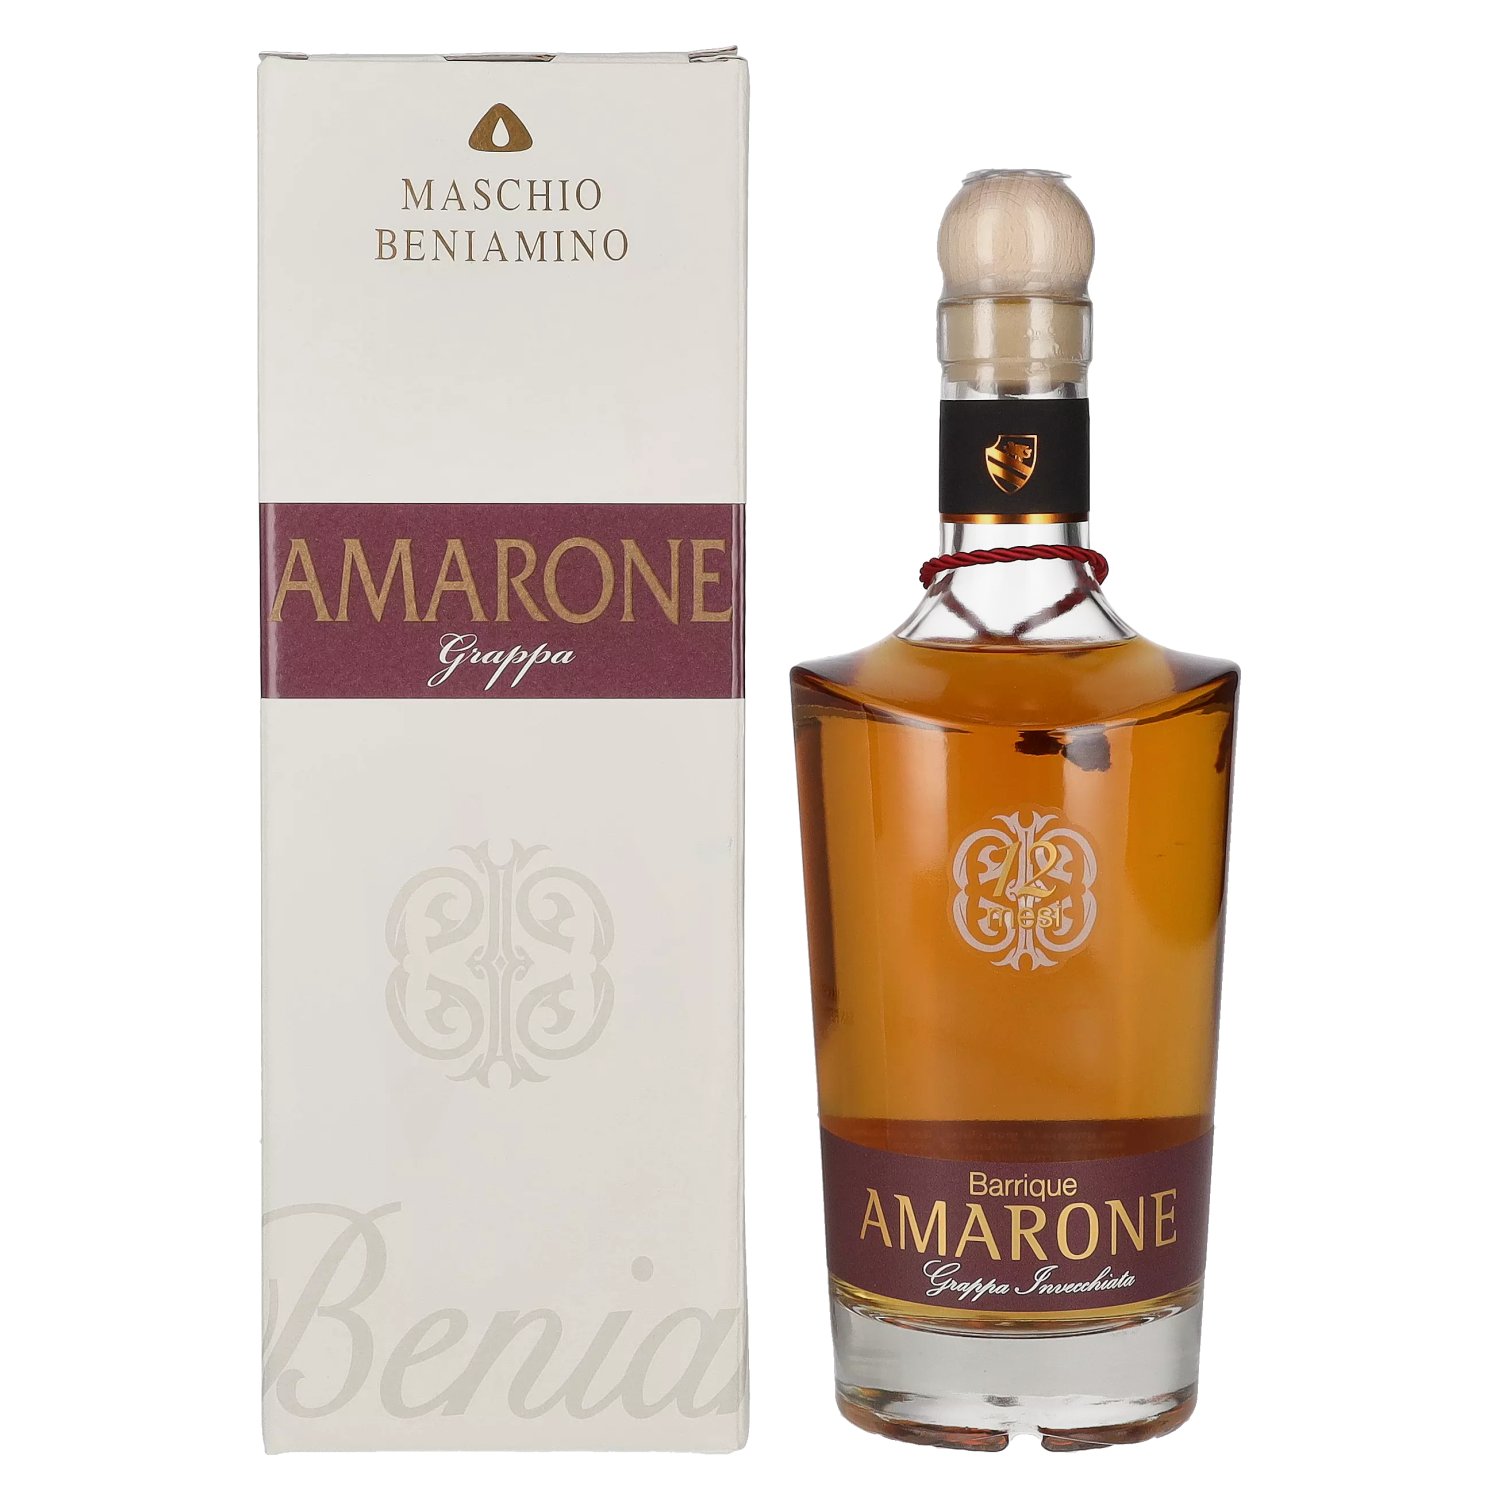 Maschio Beniamino AMARONE Invecchiata 12 40% 0,7l in Giftbox in Barrique Grappa Vol. Mesi